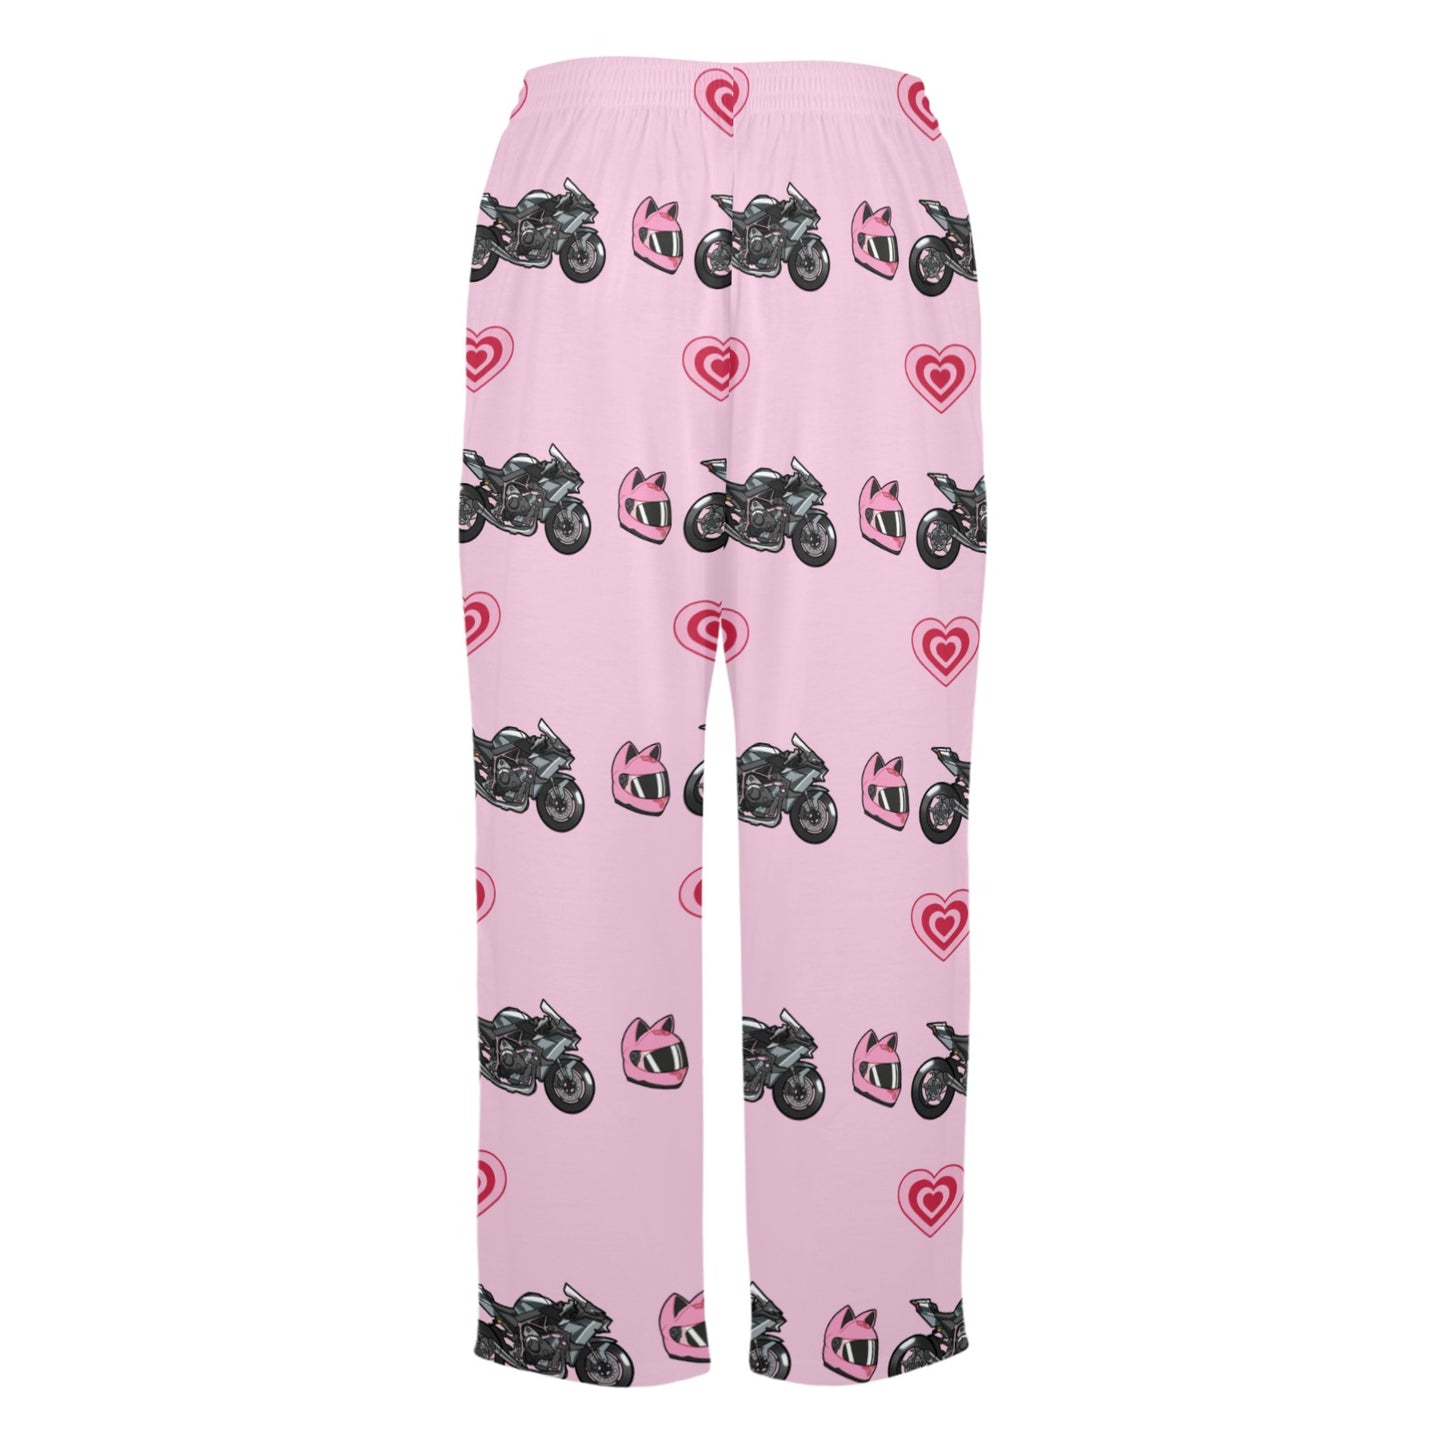 Kawasaki Ninja H2 R Pajama Pants Pink